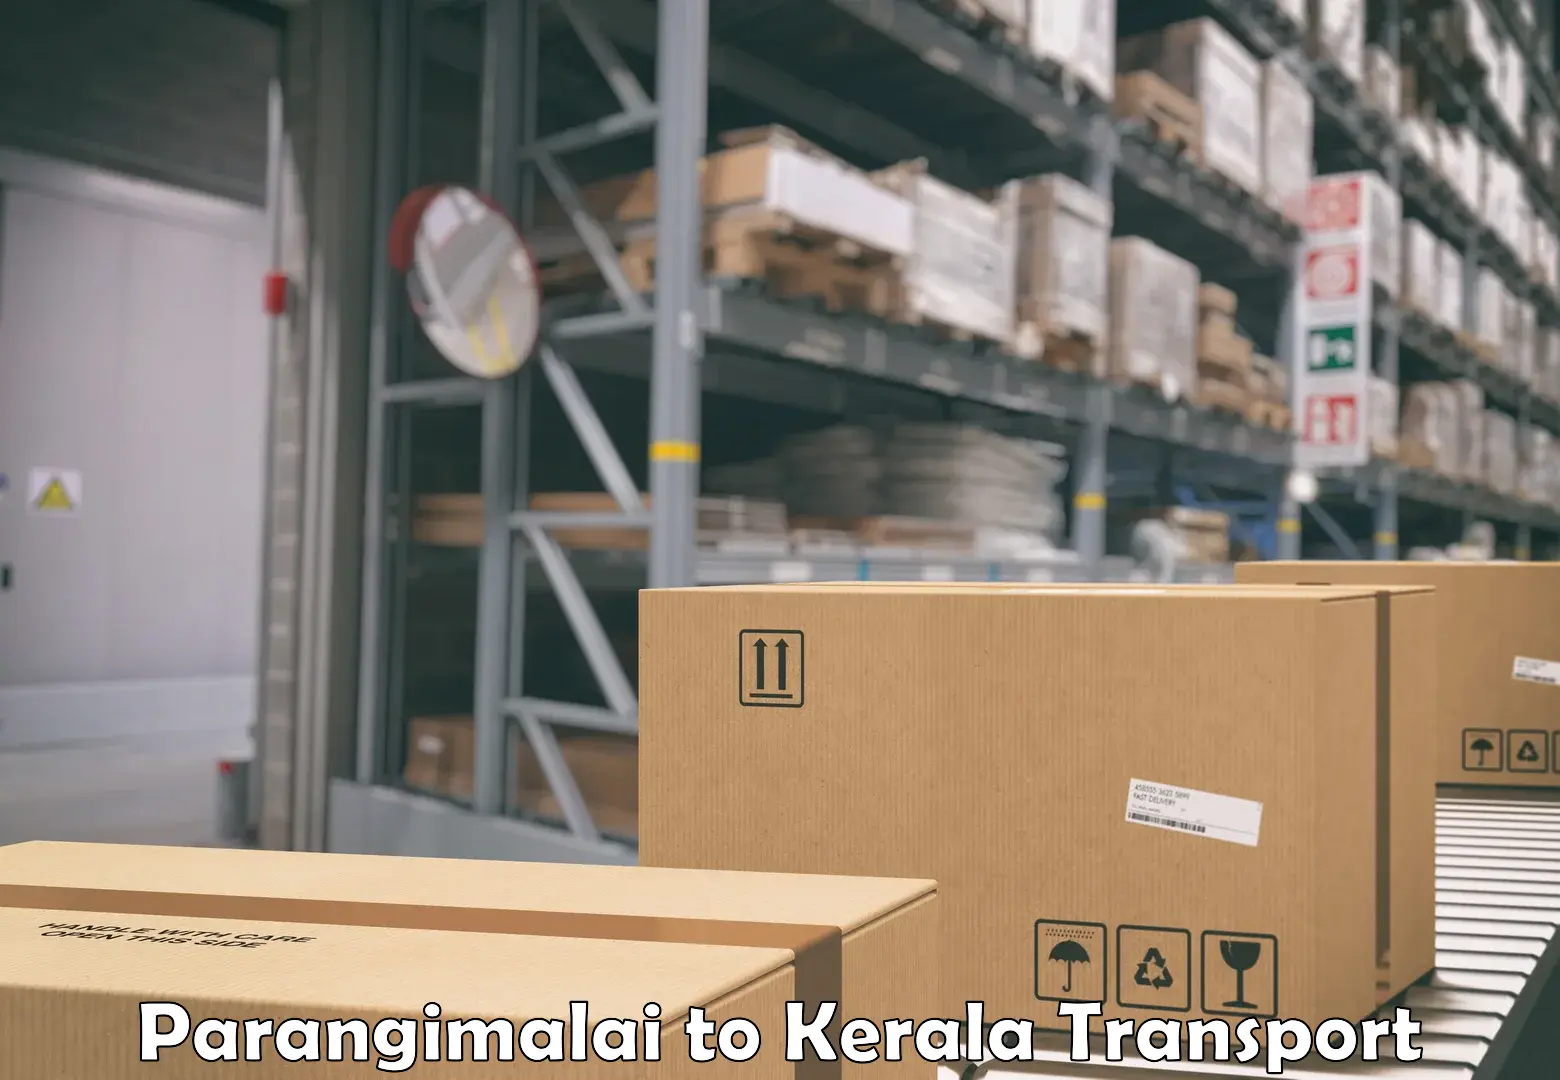 Container transport service Parangimalai to Kottayam